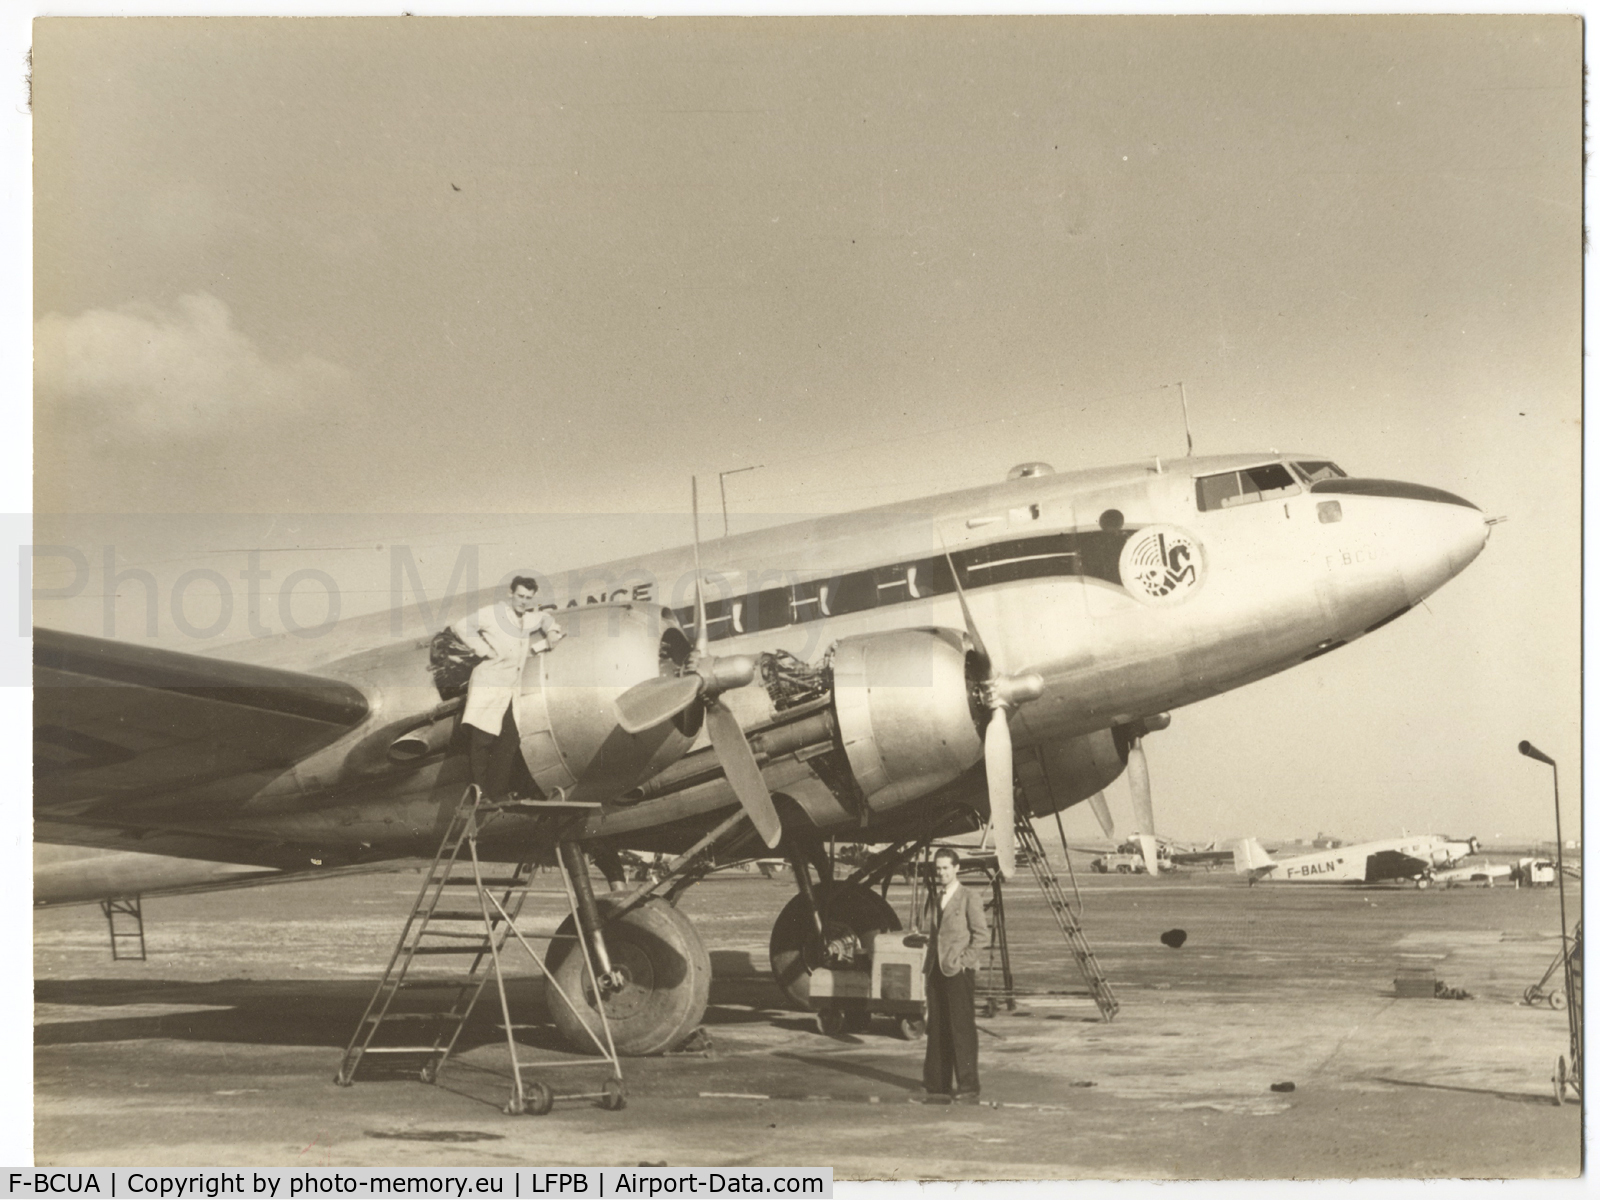 F-BCUA, 1946 SNCASE SE.161/P7 Languedoc C/N 27, SNCASE SE.161/P7 Languedoc, c/n: 27 F-BCUA Air France